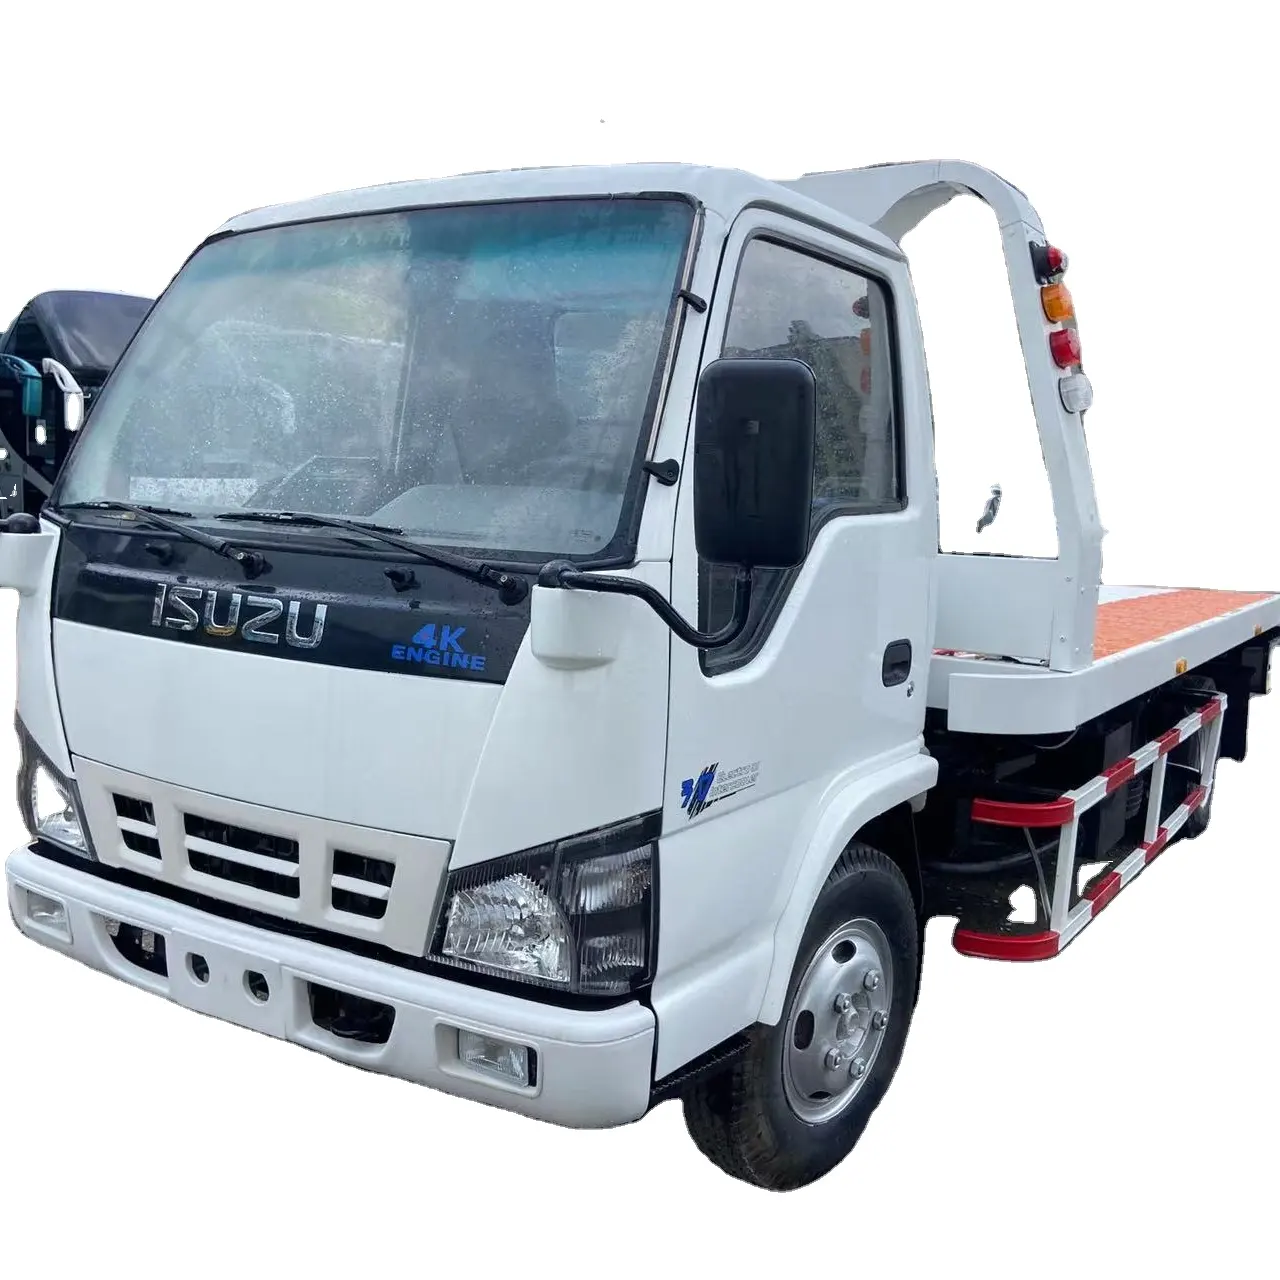 90% nuovo camion ISUZUu wrecker 3 tonnellate capacità di carico camion di salvataggio con il nuovo sistema di piattaforma letto per la vendita